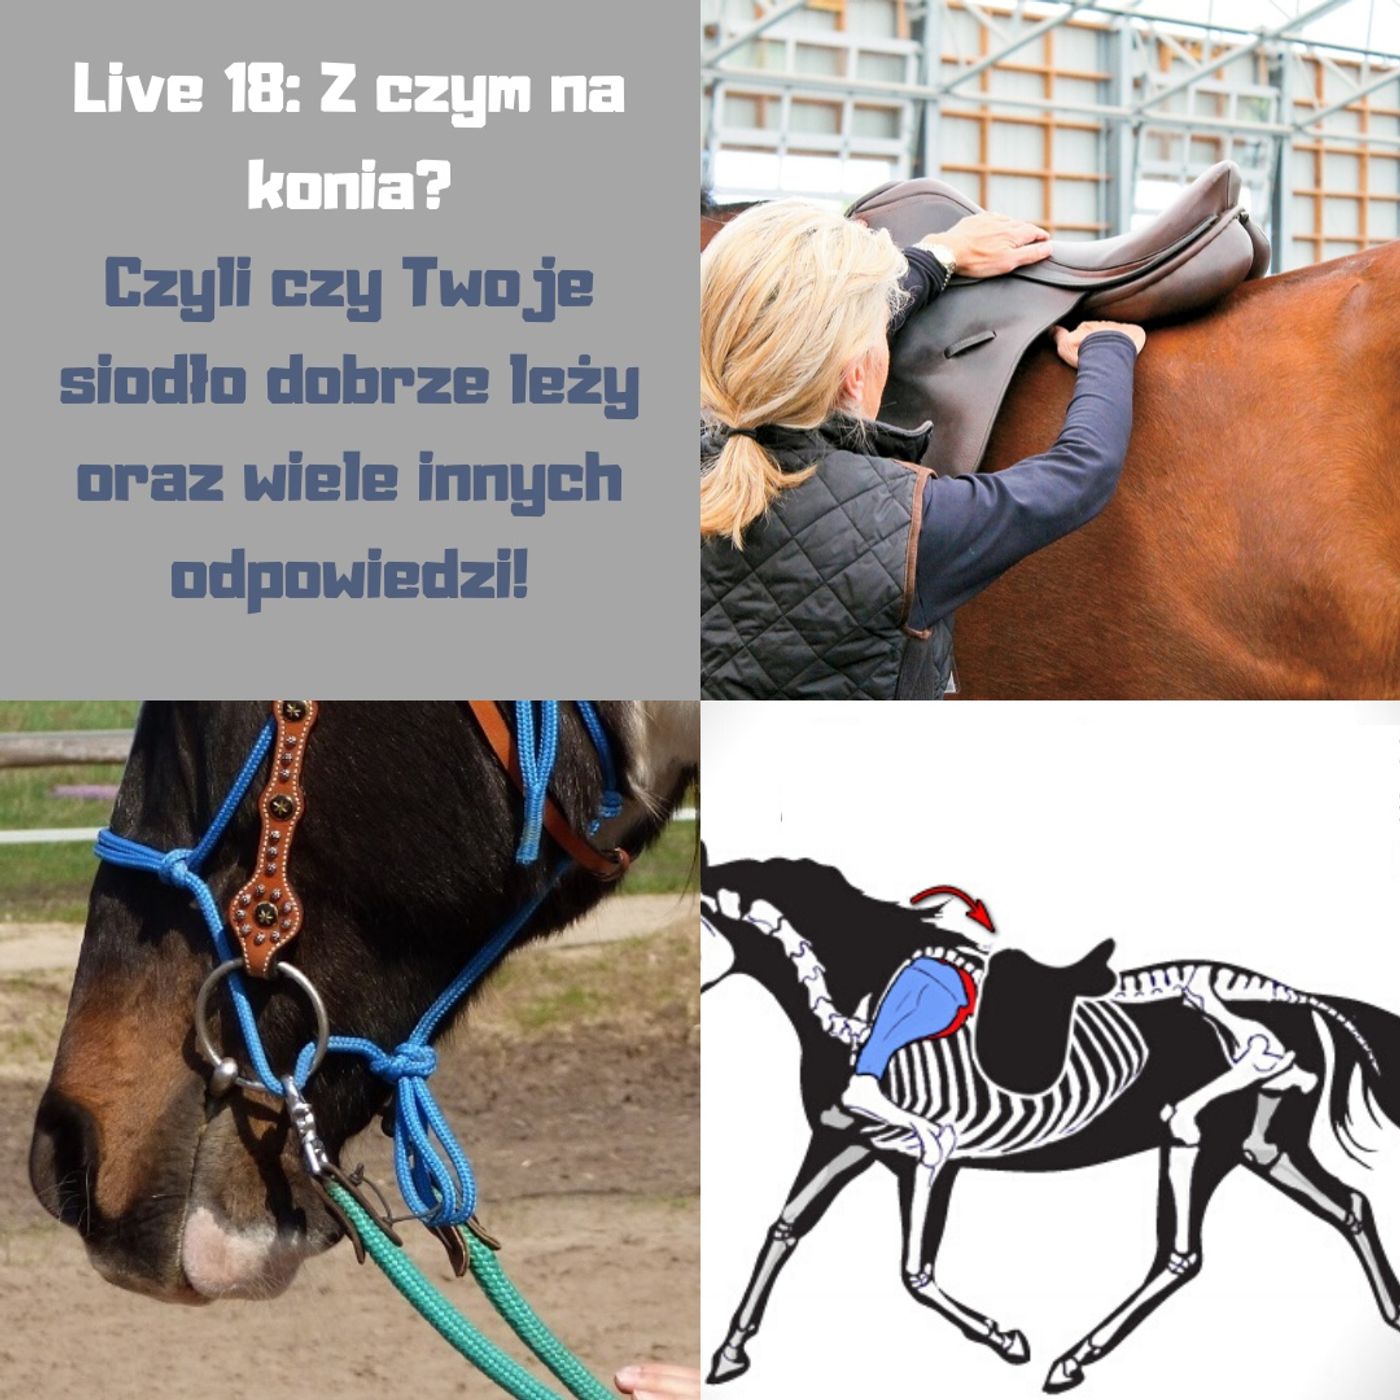 Live 18: Z czym na konia, czyli o dopasowaniu siodła i innych problemach